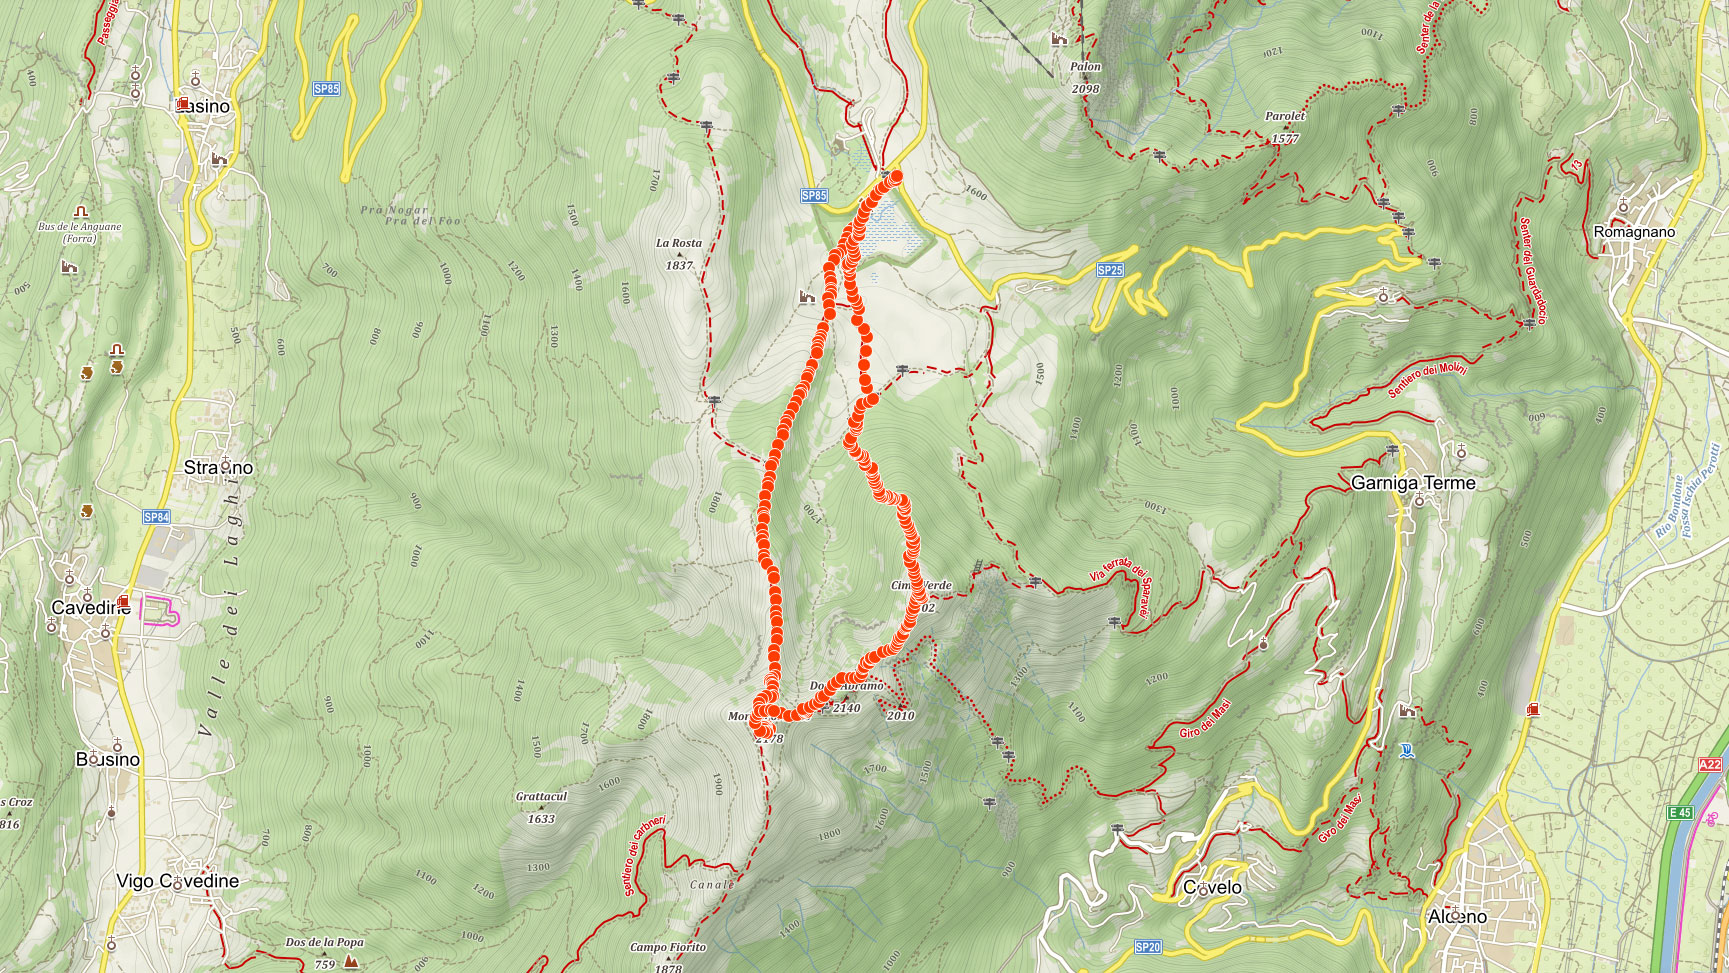 Mapa výletu na Monte Cornetto nedaleko jezera Garda v Itálii 